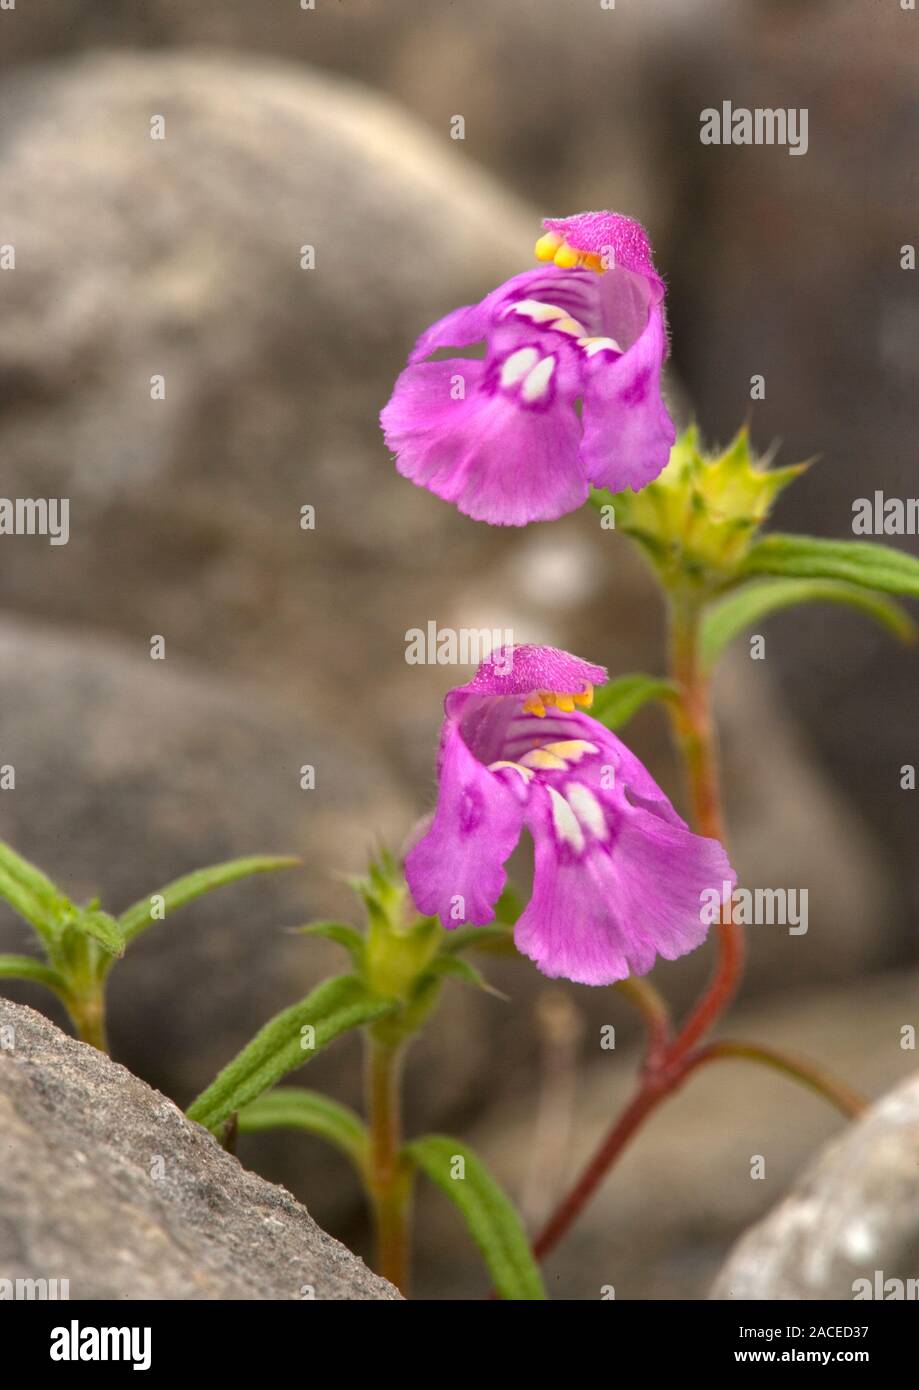 Rot Hanf - brennnessel Blumen (Galeopsis angustifolia). In Großbritannien diese jährliche Wildflower ist wie bundesweit knapp eingestuft. Auf der Gowe fotografiert. Stockfoto